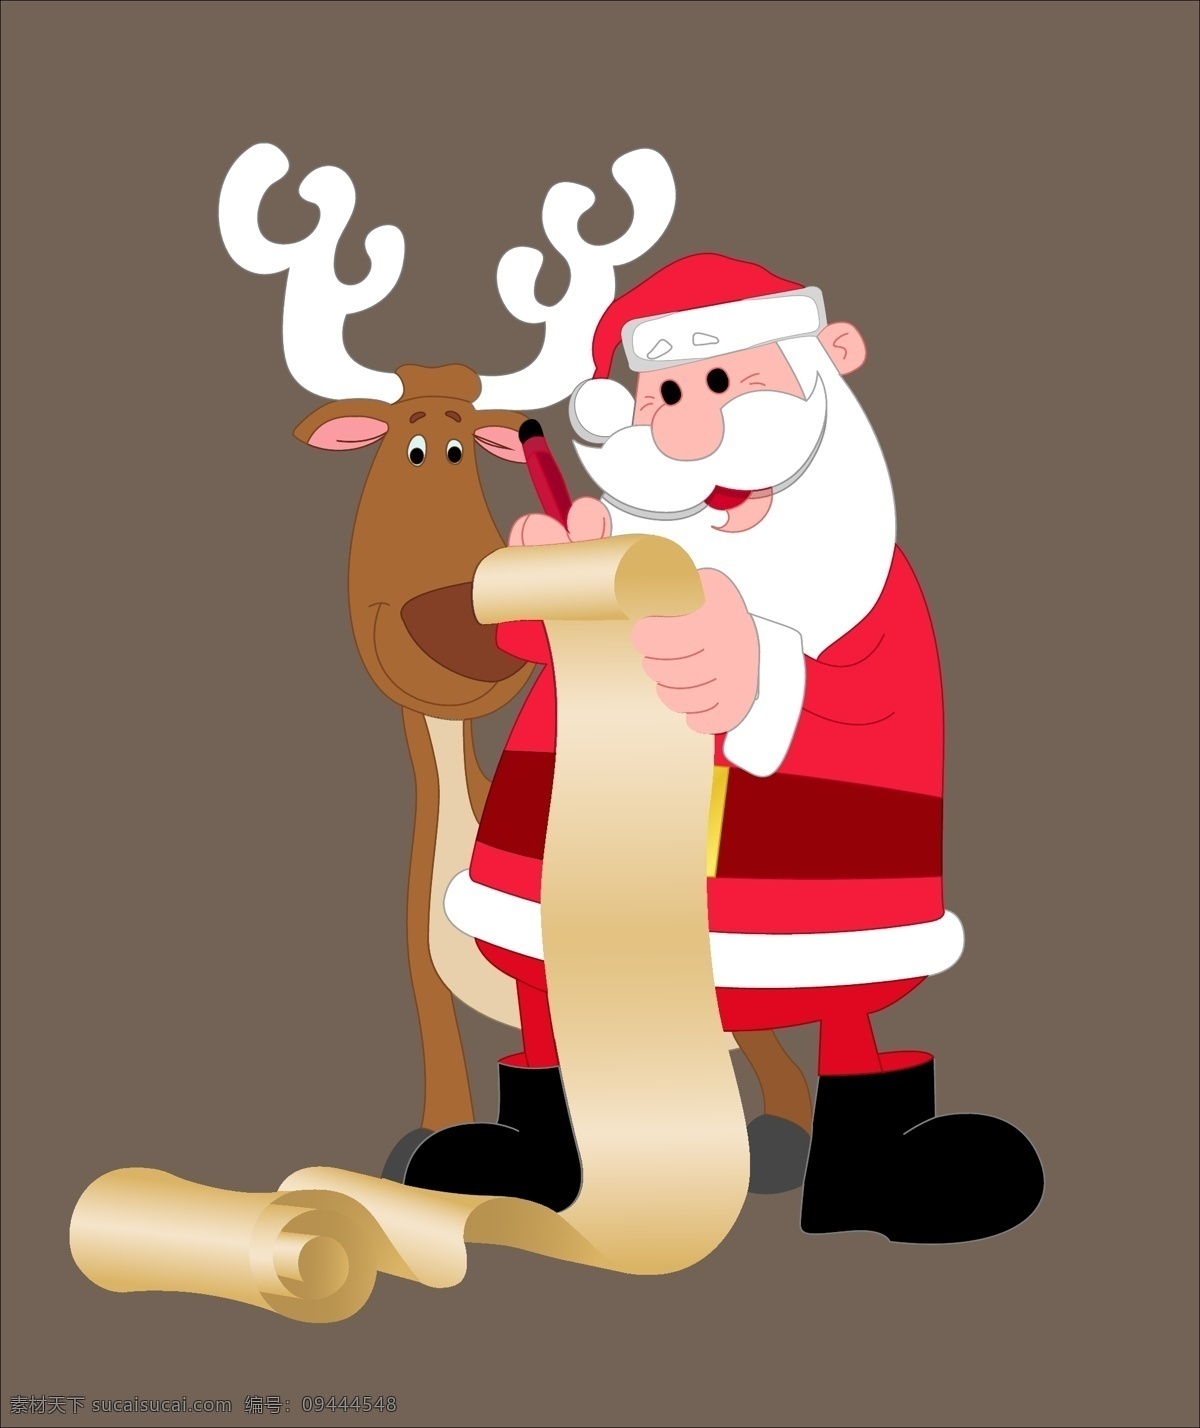 圣诞老人 卡通 精美 矢量 麋鹿 红色 圣诞节 礼物 矢量图片